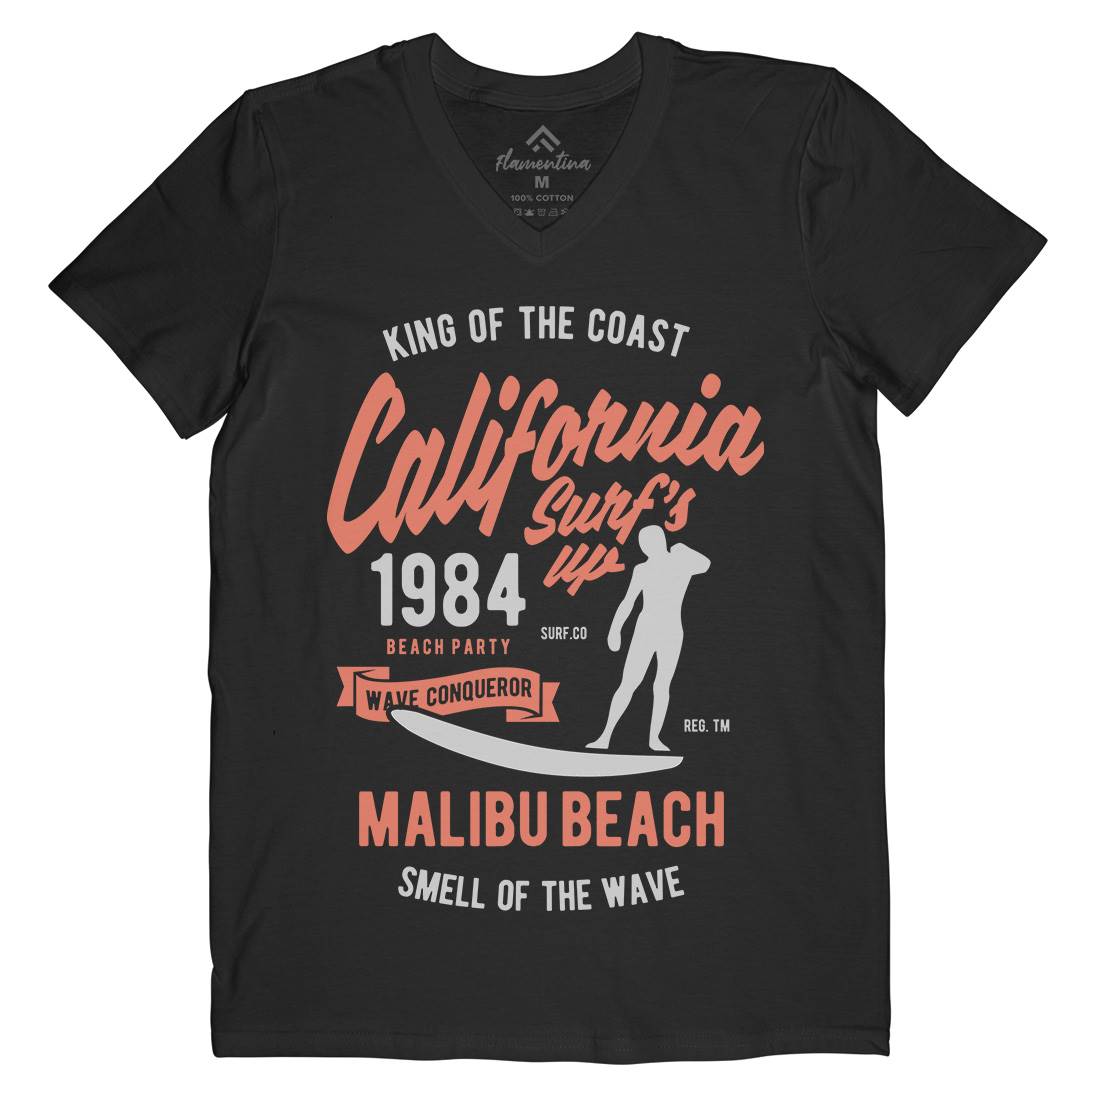 California Surfs Up Mens V-Neck T-Shirt Surf B389